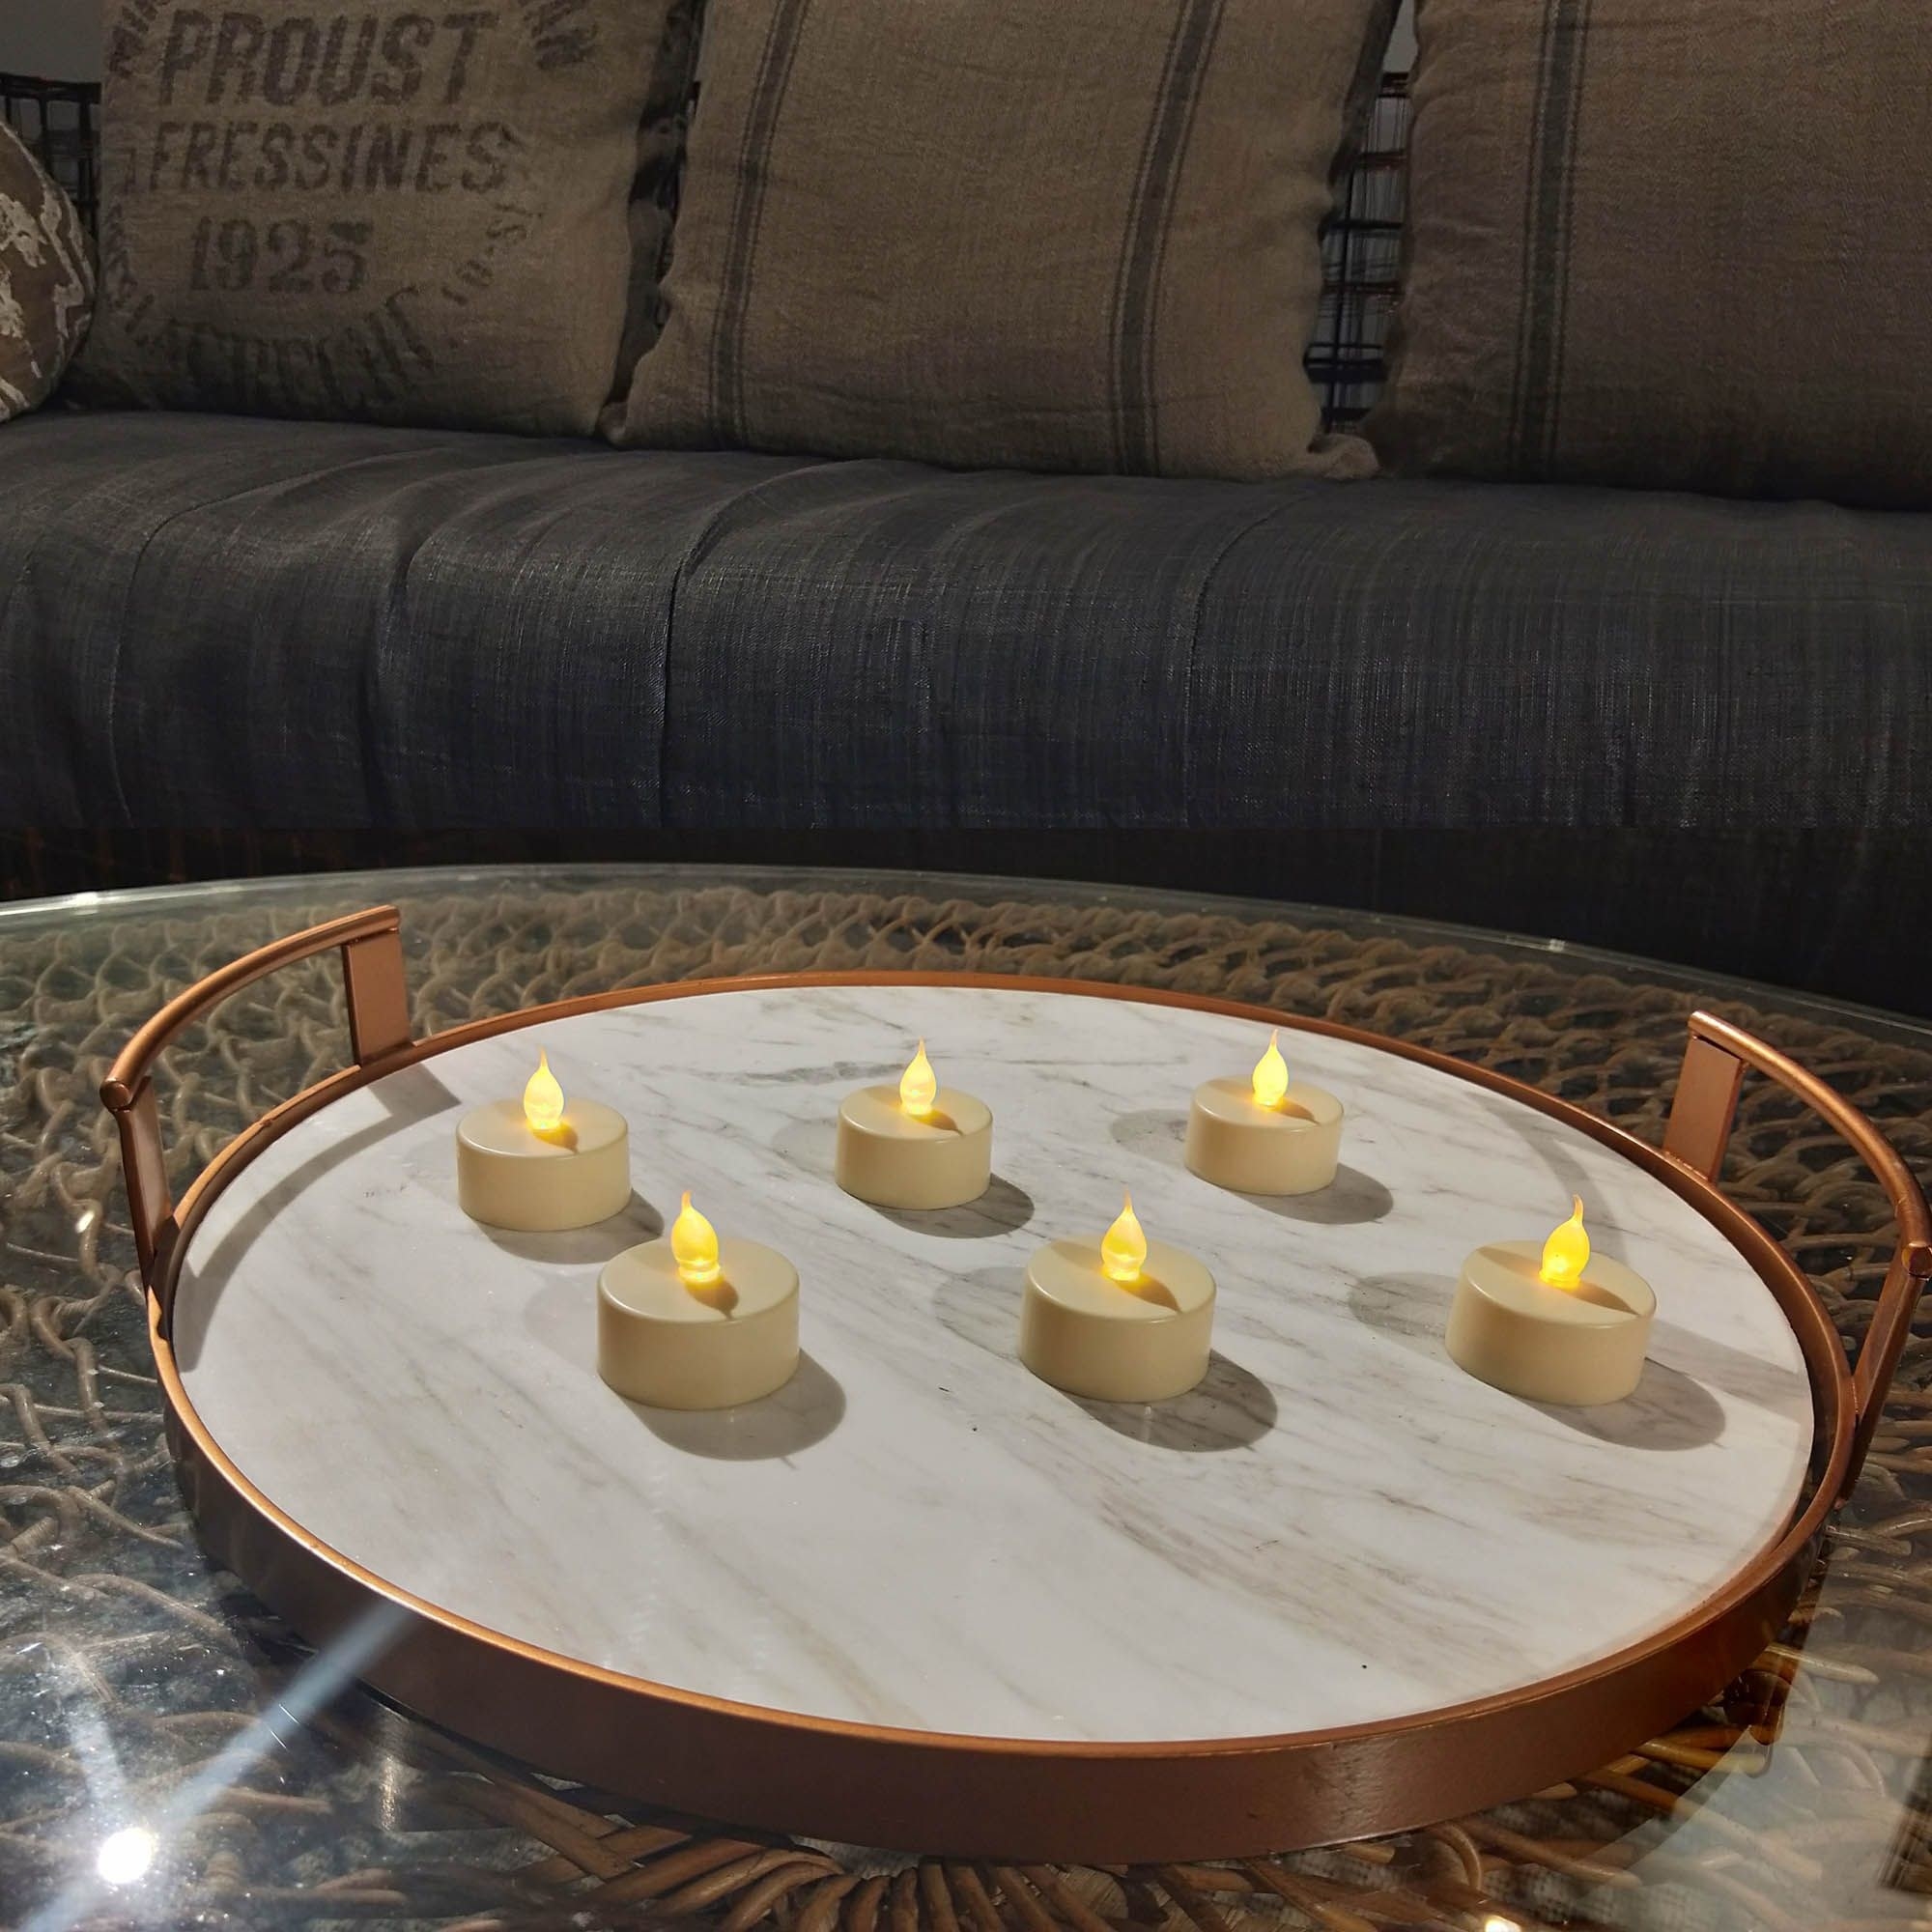 Six flameless tea lights on a coffee table 